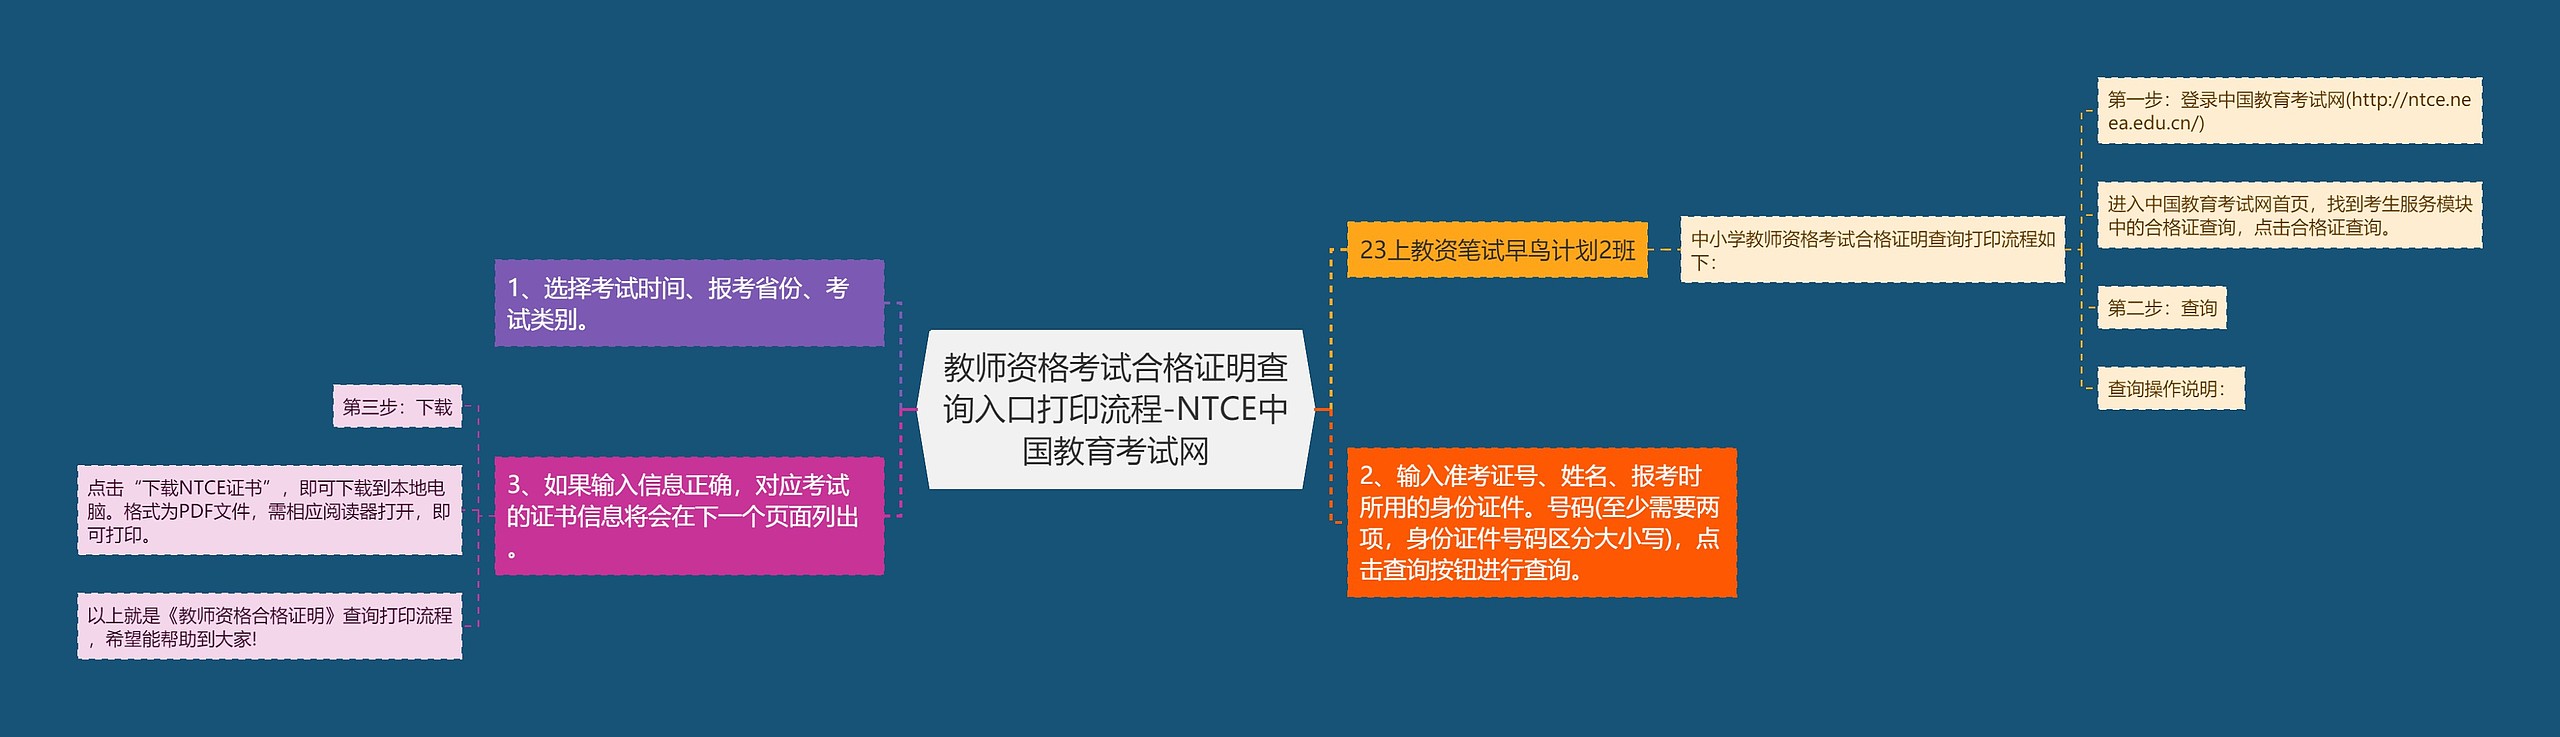 教师资格考试合格证明查询入口打印流程-NTCE中国教育考试网思维导图